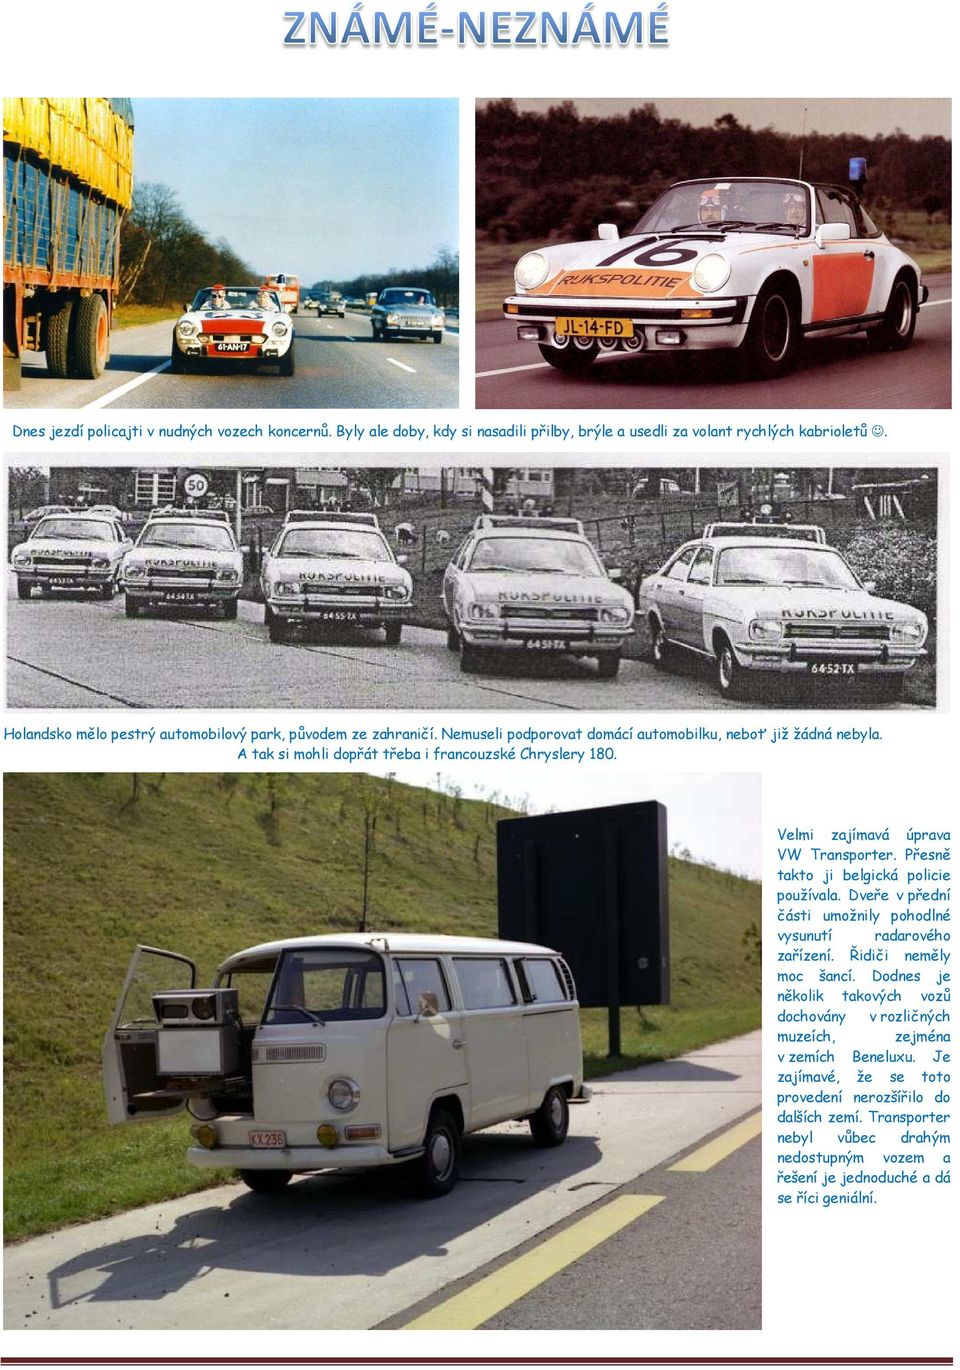 Velmi zajímavá úprava VW Transporter. Přesně takto ji belgická policie používala. Dveře v přední části umožnily pohodlné vysunutí radarového zařízení. Řidiči neměly moc šancí.